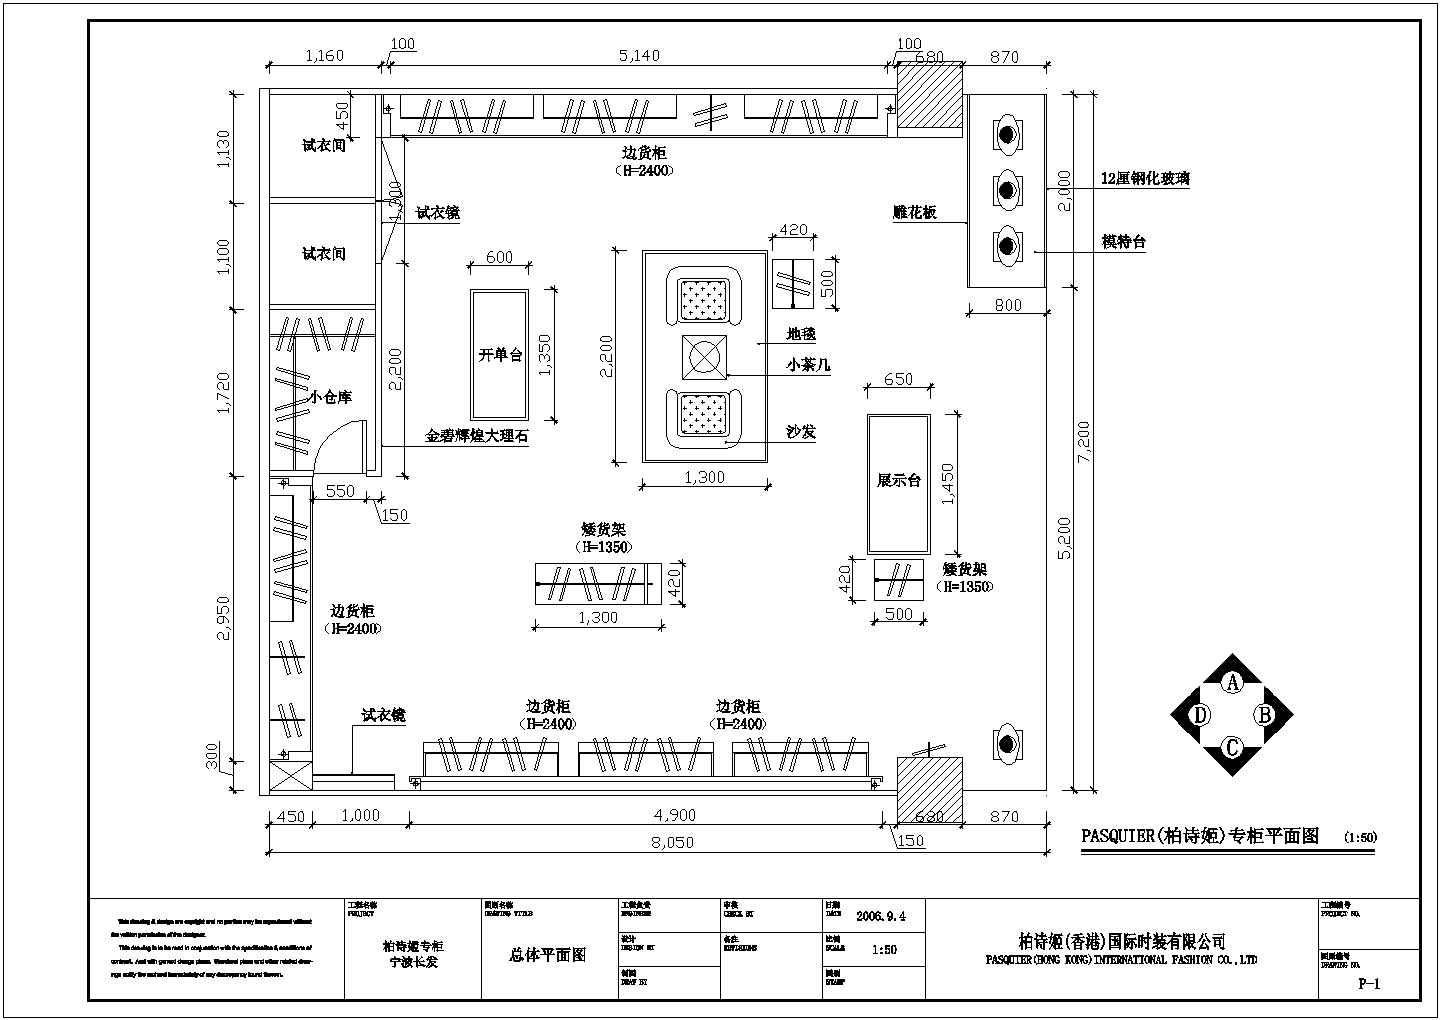 【上海】某高档精品服装店全套装修施工设计cad图纸